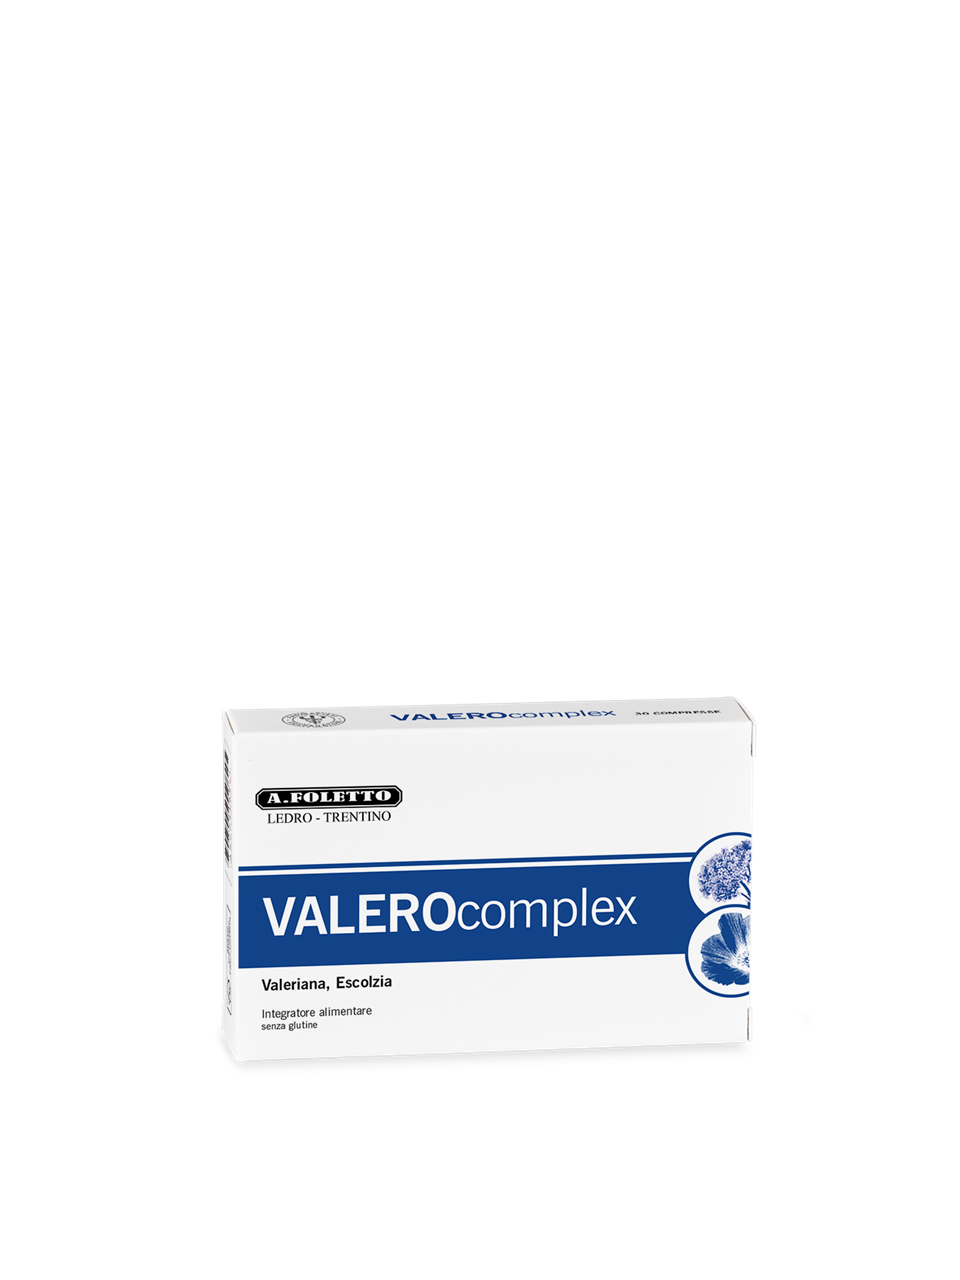 VALEROcomplex